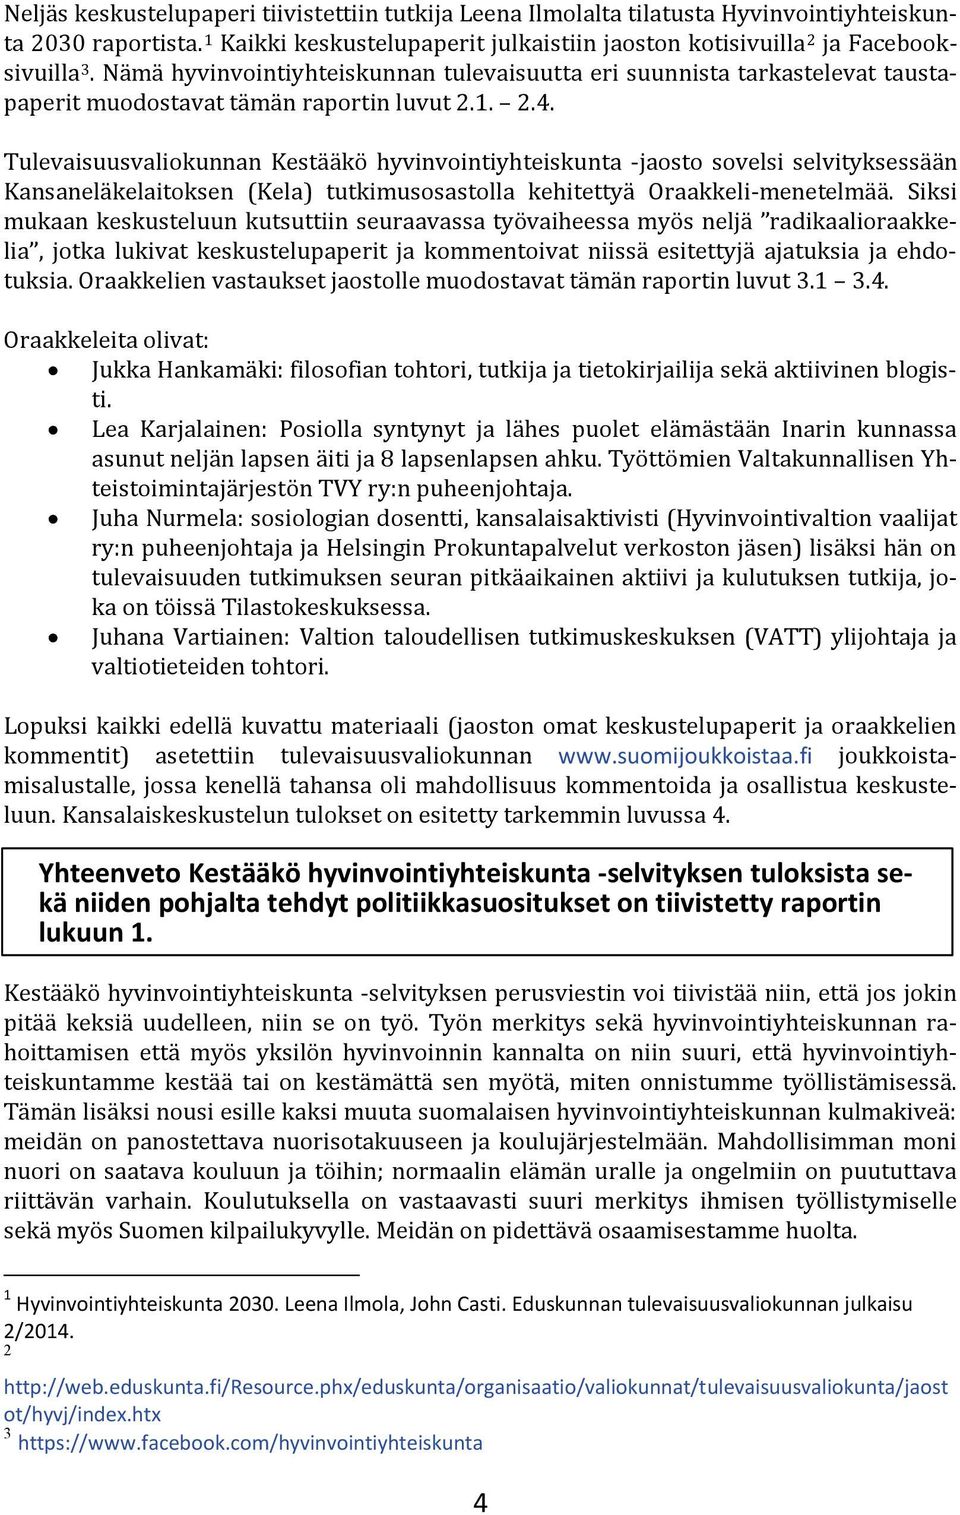 Tulevaisuusvaliokunnan Kestääkö hyvinvointiyhteiskunta -jaosto sovelsi selvityksessään Kansaneläkelaitoksen (Kela) tutkimusosastolla kehitettyä Oraakkeli-menetelmää.